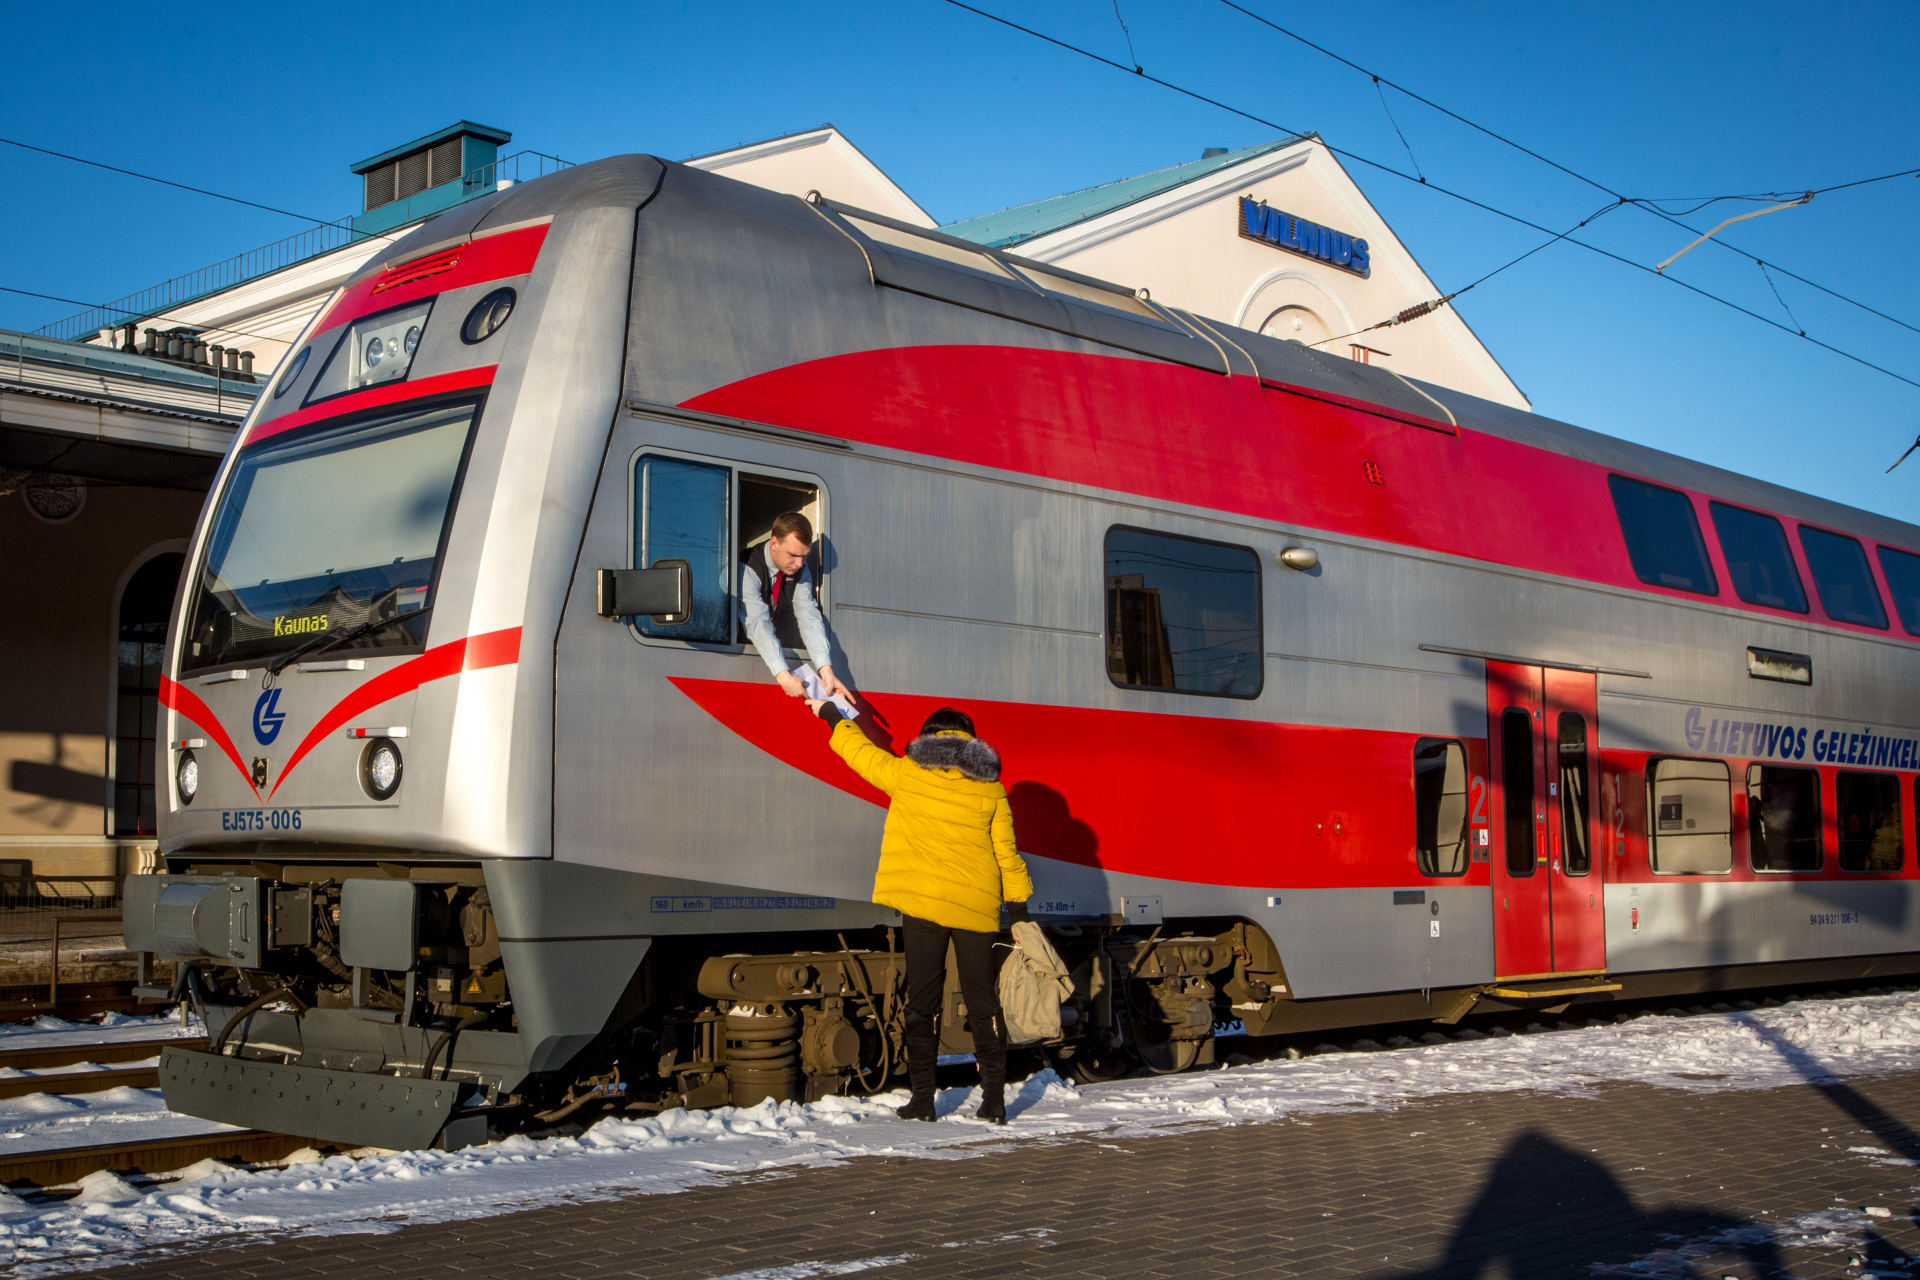 shocking combine at least Iš Vilniaus į Minską pradeda važiuoti elektriniai traukiniai | Verslas |  15min.lt